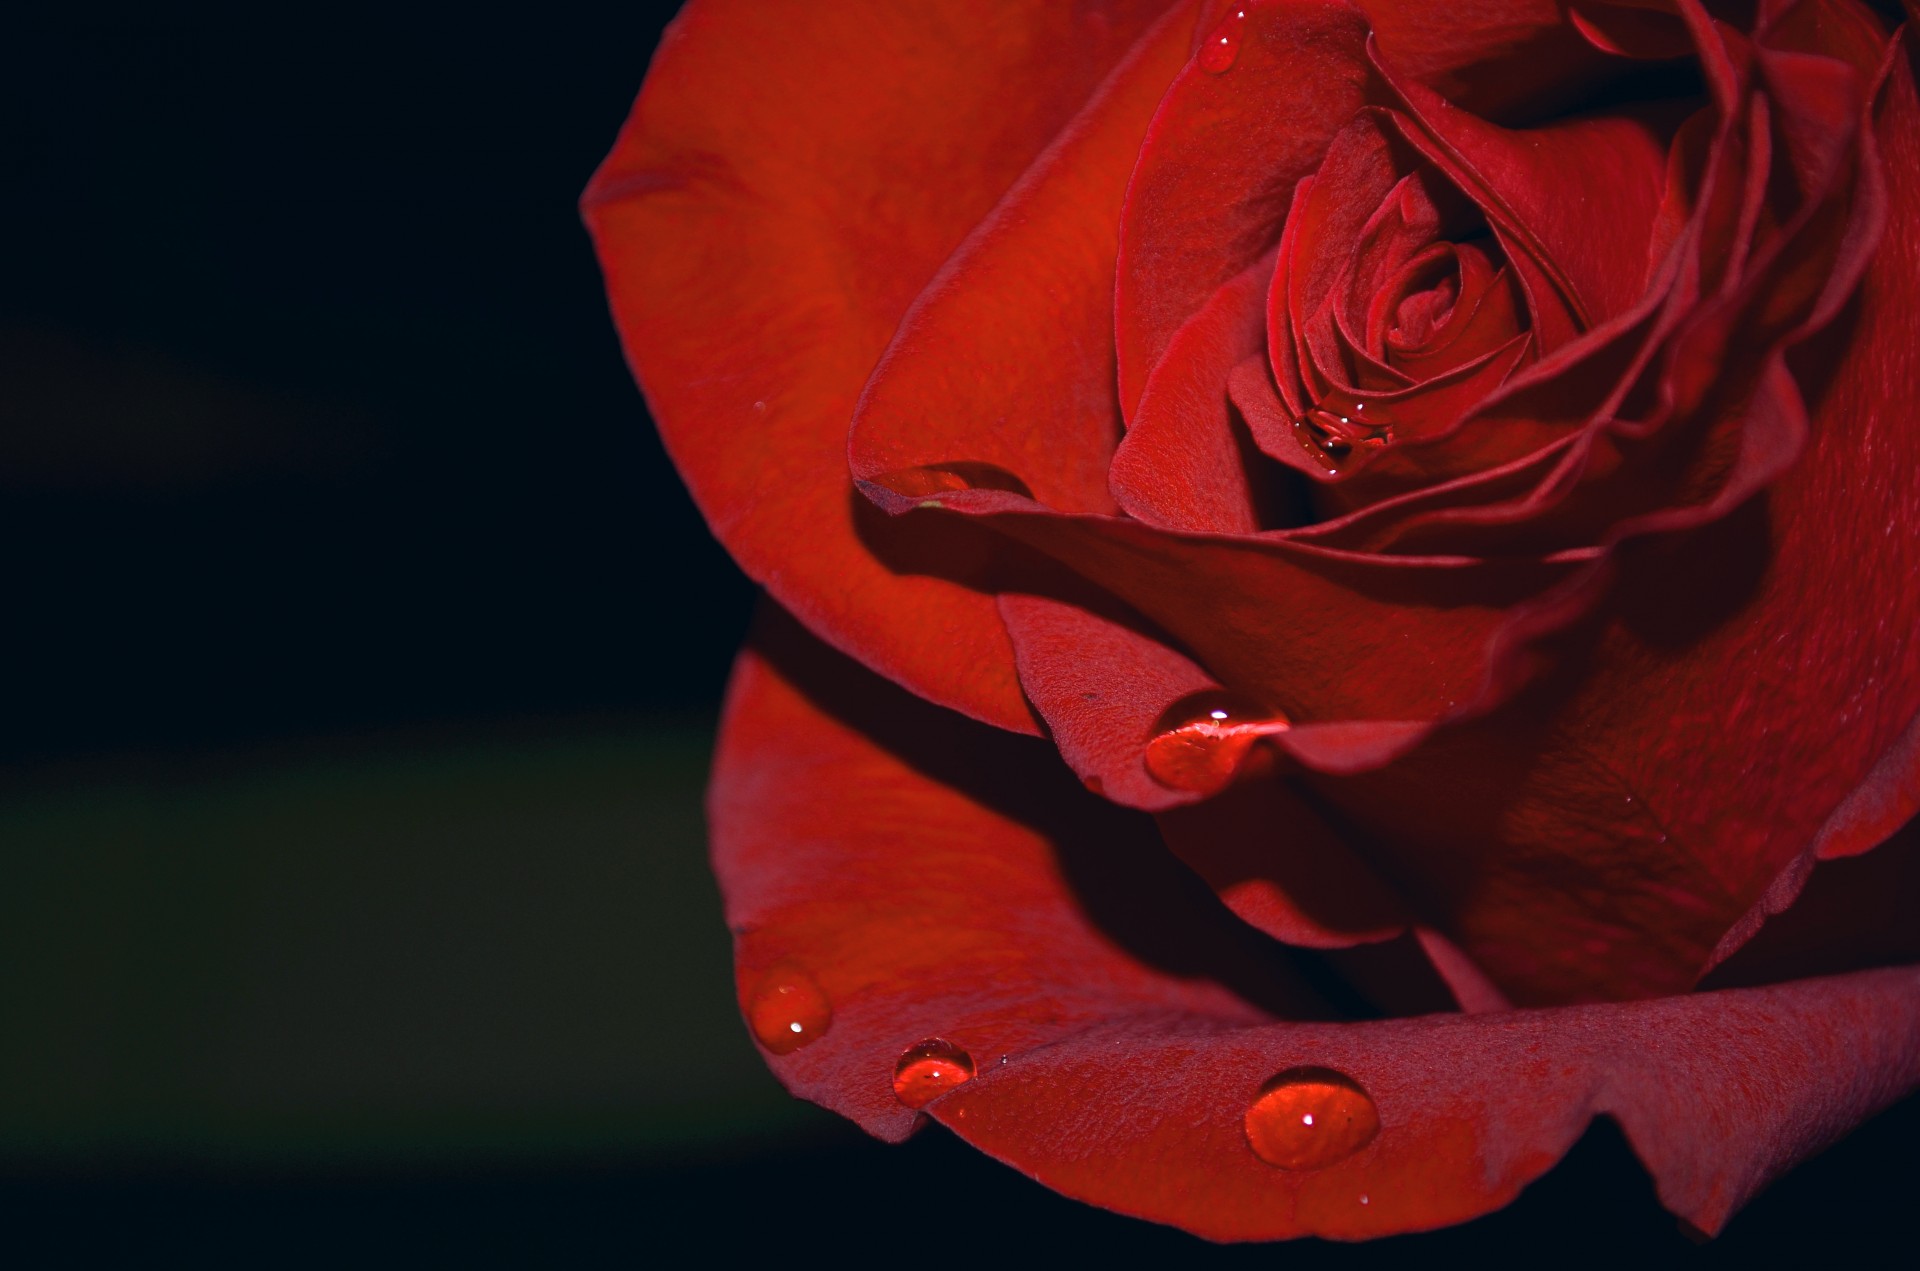 Красные бутоны 15 дата выхода. Бутон красной розы. Бутон красной розы фото. Маленький бутон красной розы.